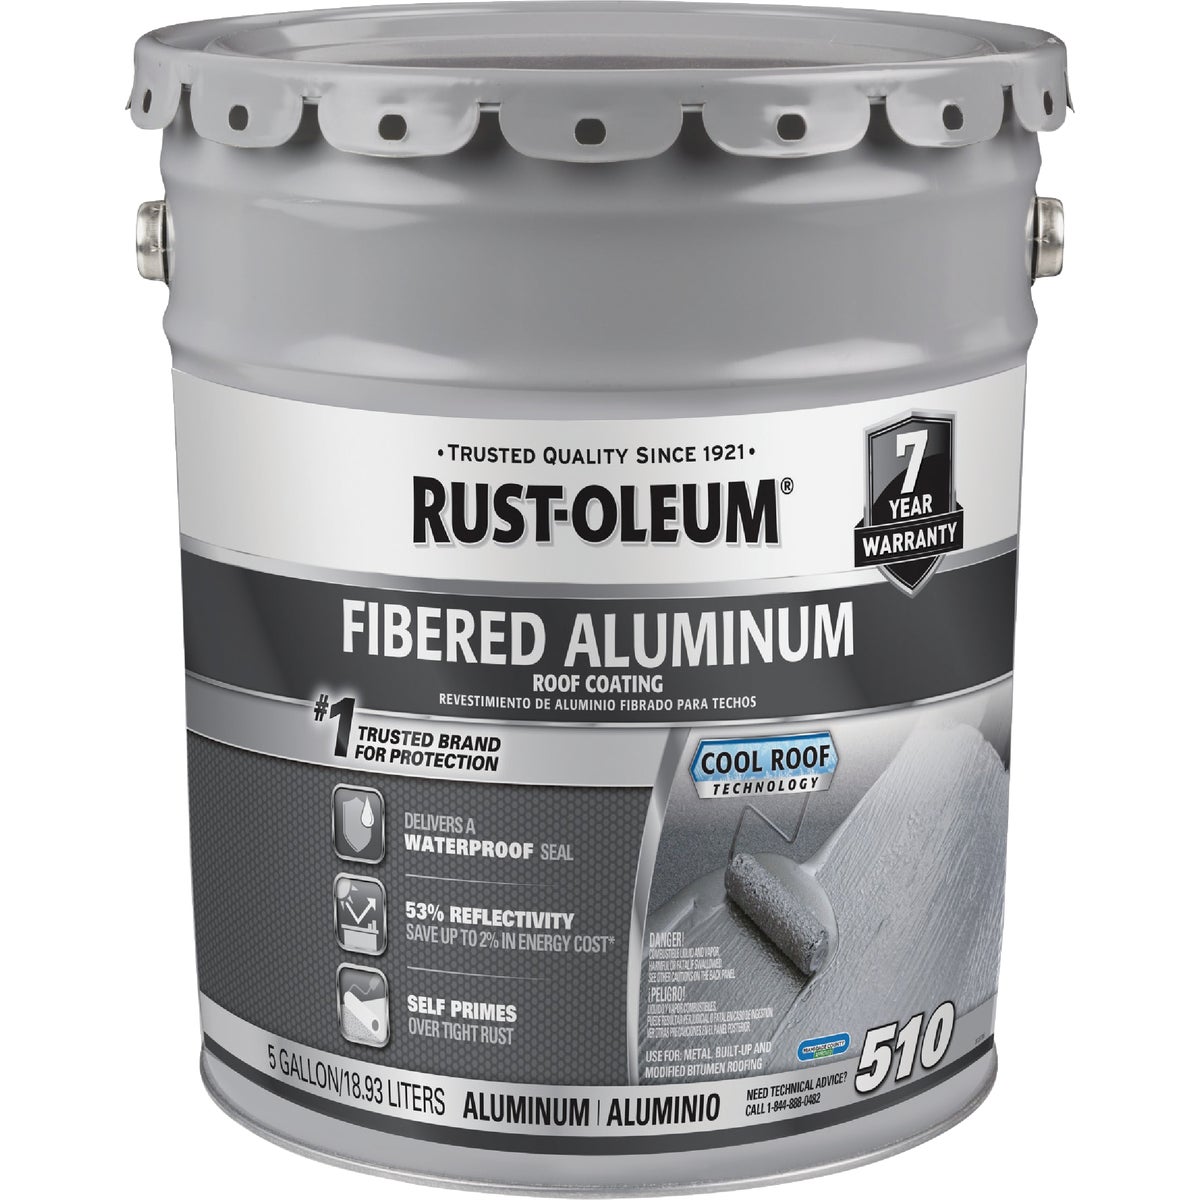 Rust-Oleum 510 5 Gal. 7-Year Fibered Aluminum Roof Coating